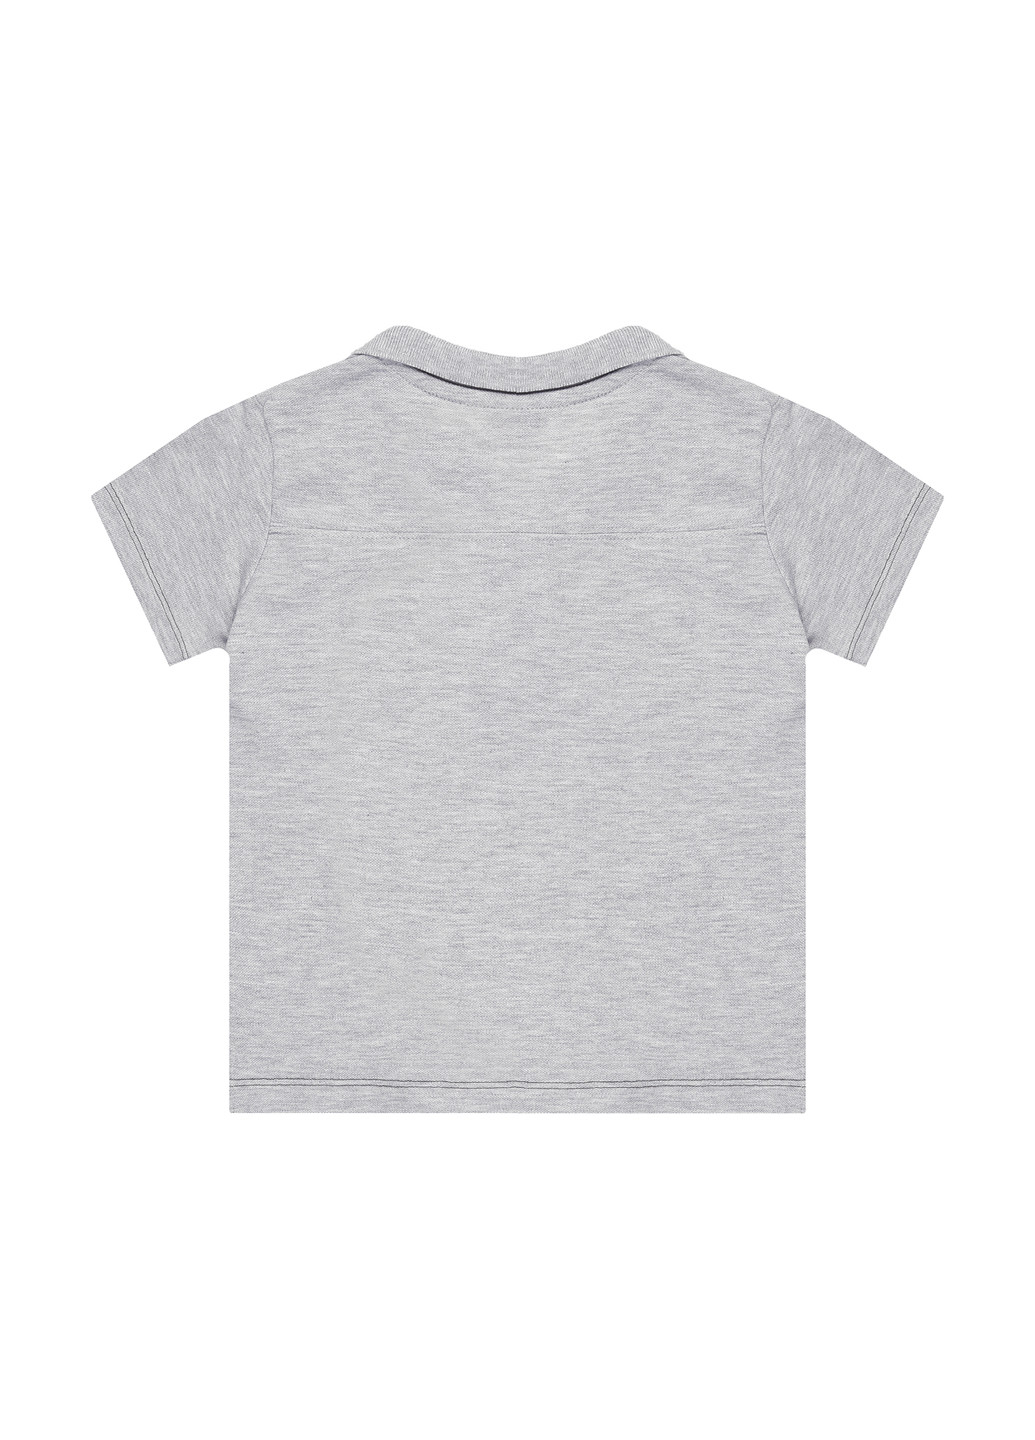 Серая детская футболка-поло для мальчика Slazenger меланжевая